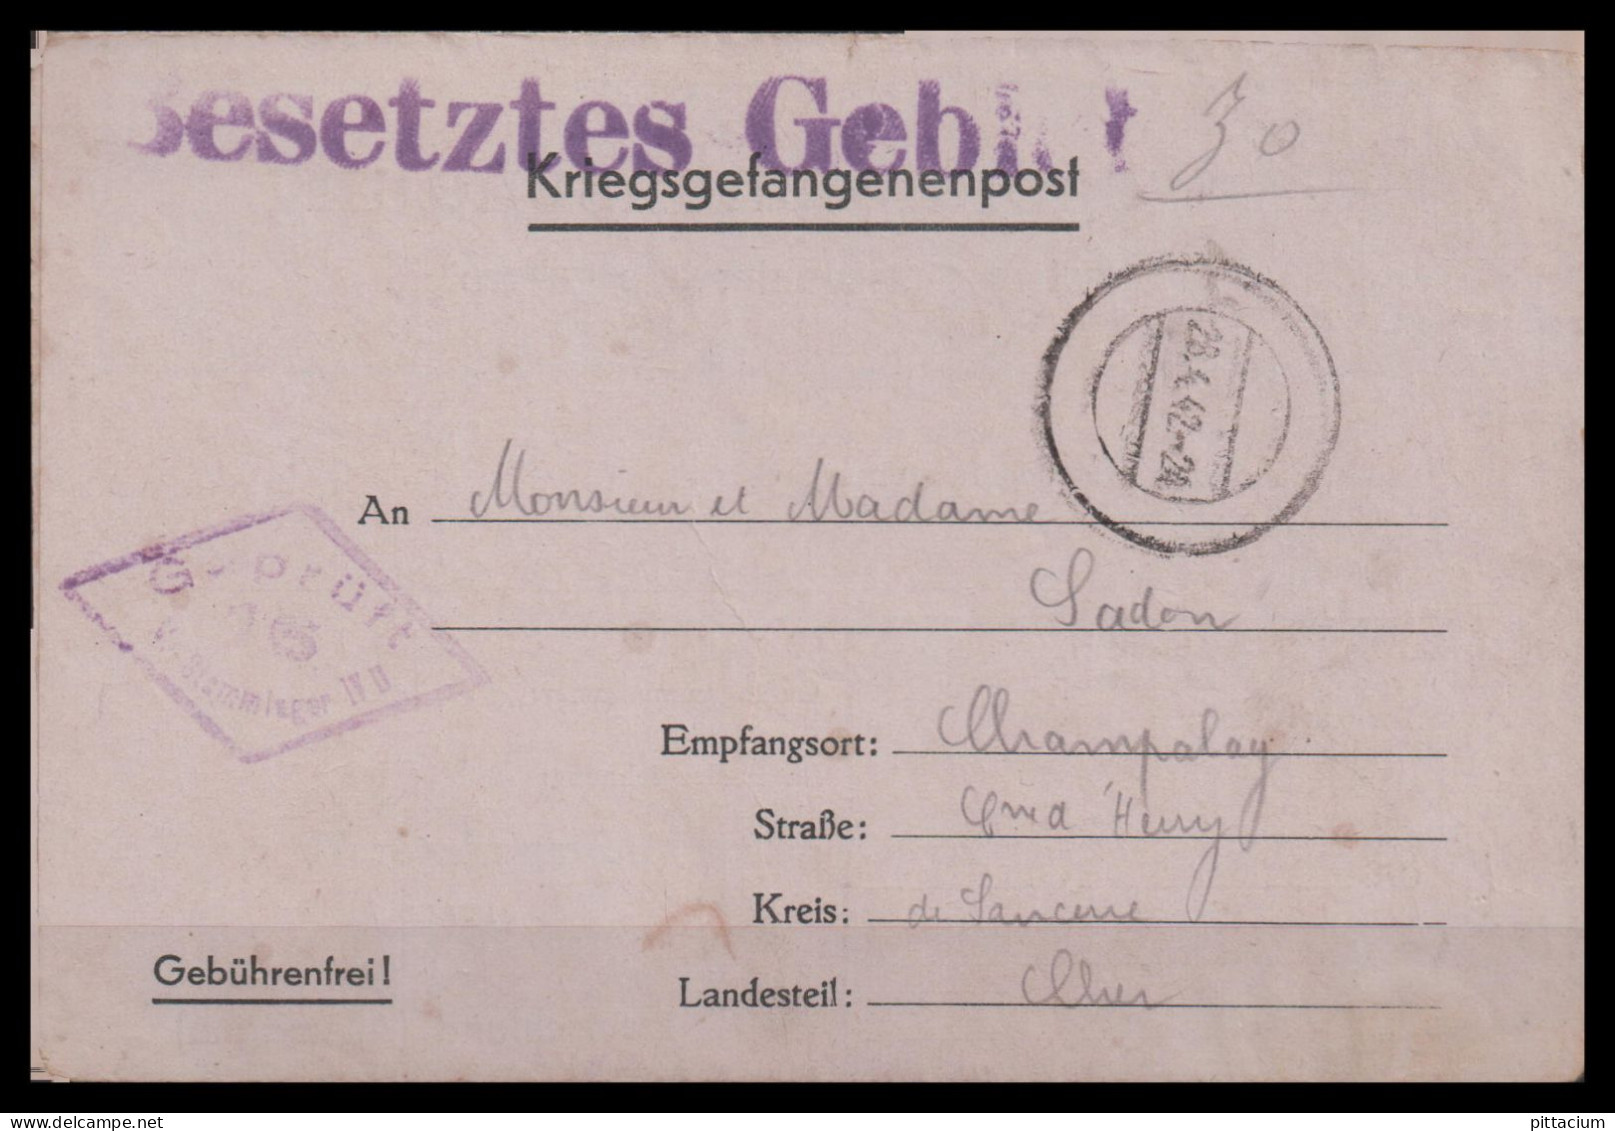 Deutschland 1942: Kriefgsgefangenenpost  | Weltkrieg, Besatzung, Gefangenenpost | Torgau, Herry;Cher - Prisoners Of War Mail